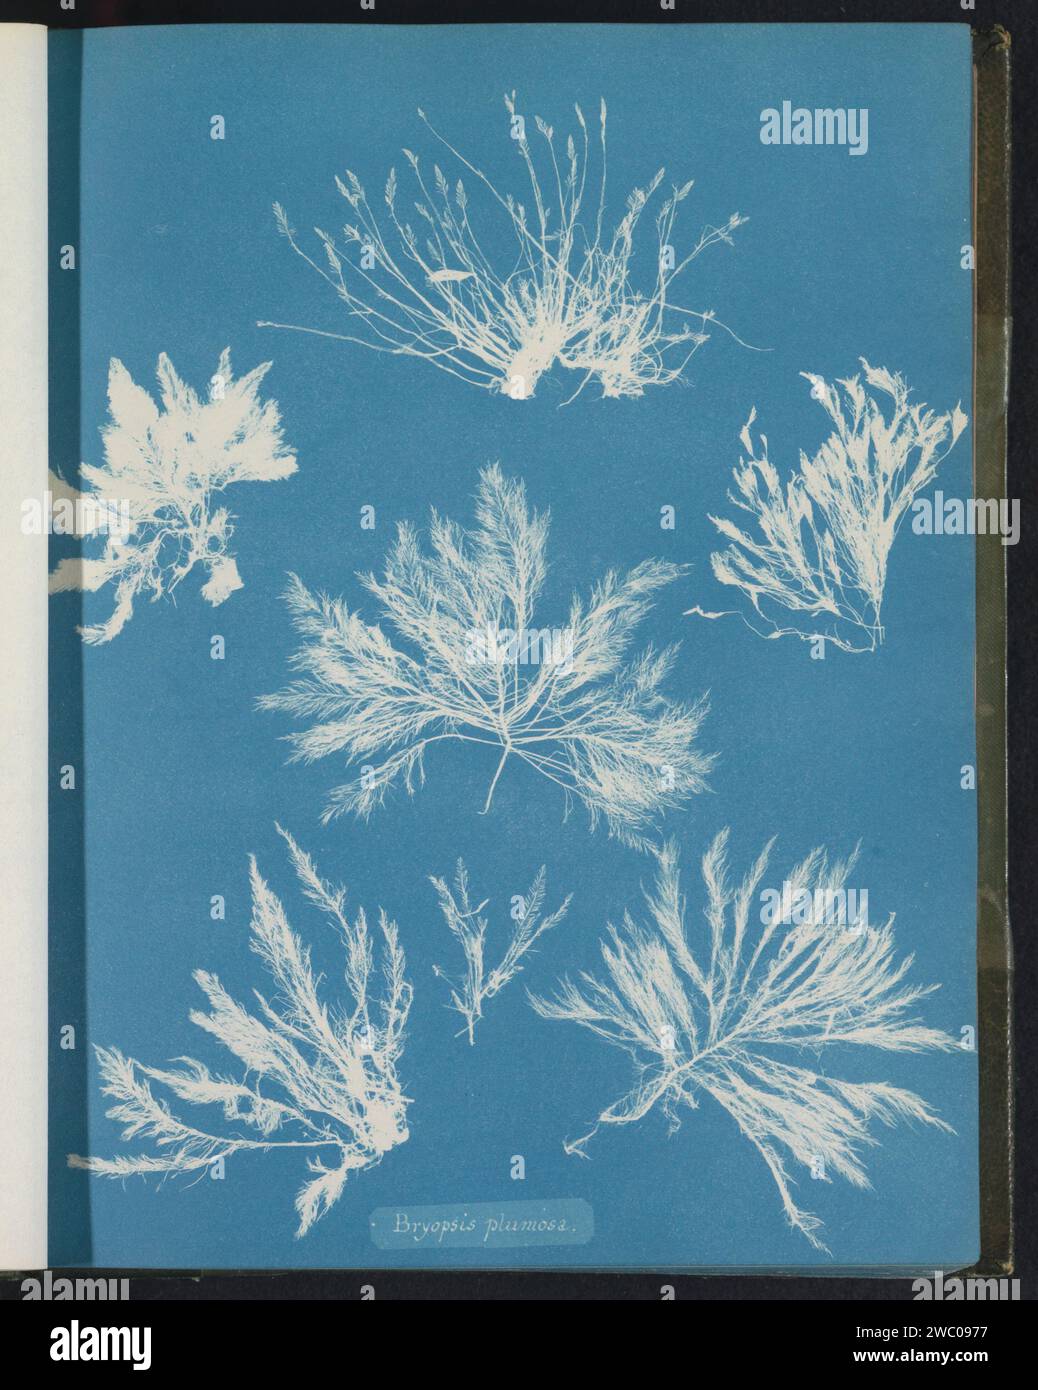 Bryopsis plumosa, Anna Atkins, c. 1843 - c. 1853 photograph  United Kingdom photographic support cyanotype algae, seaweed Stock Photo